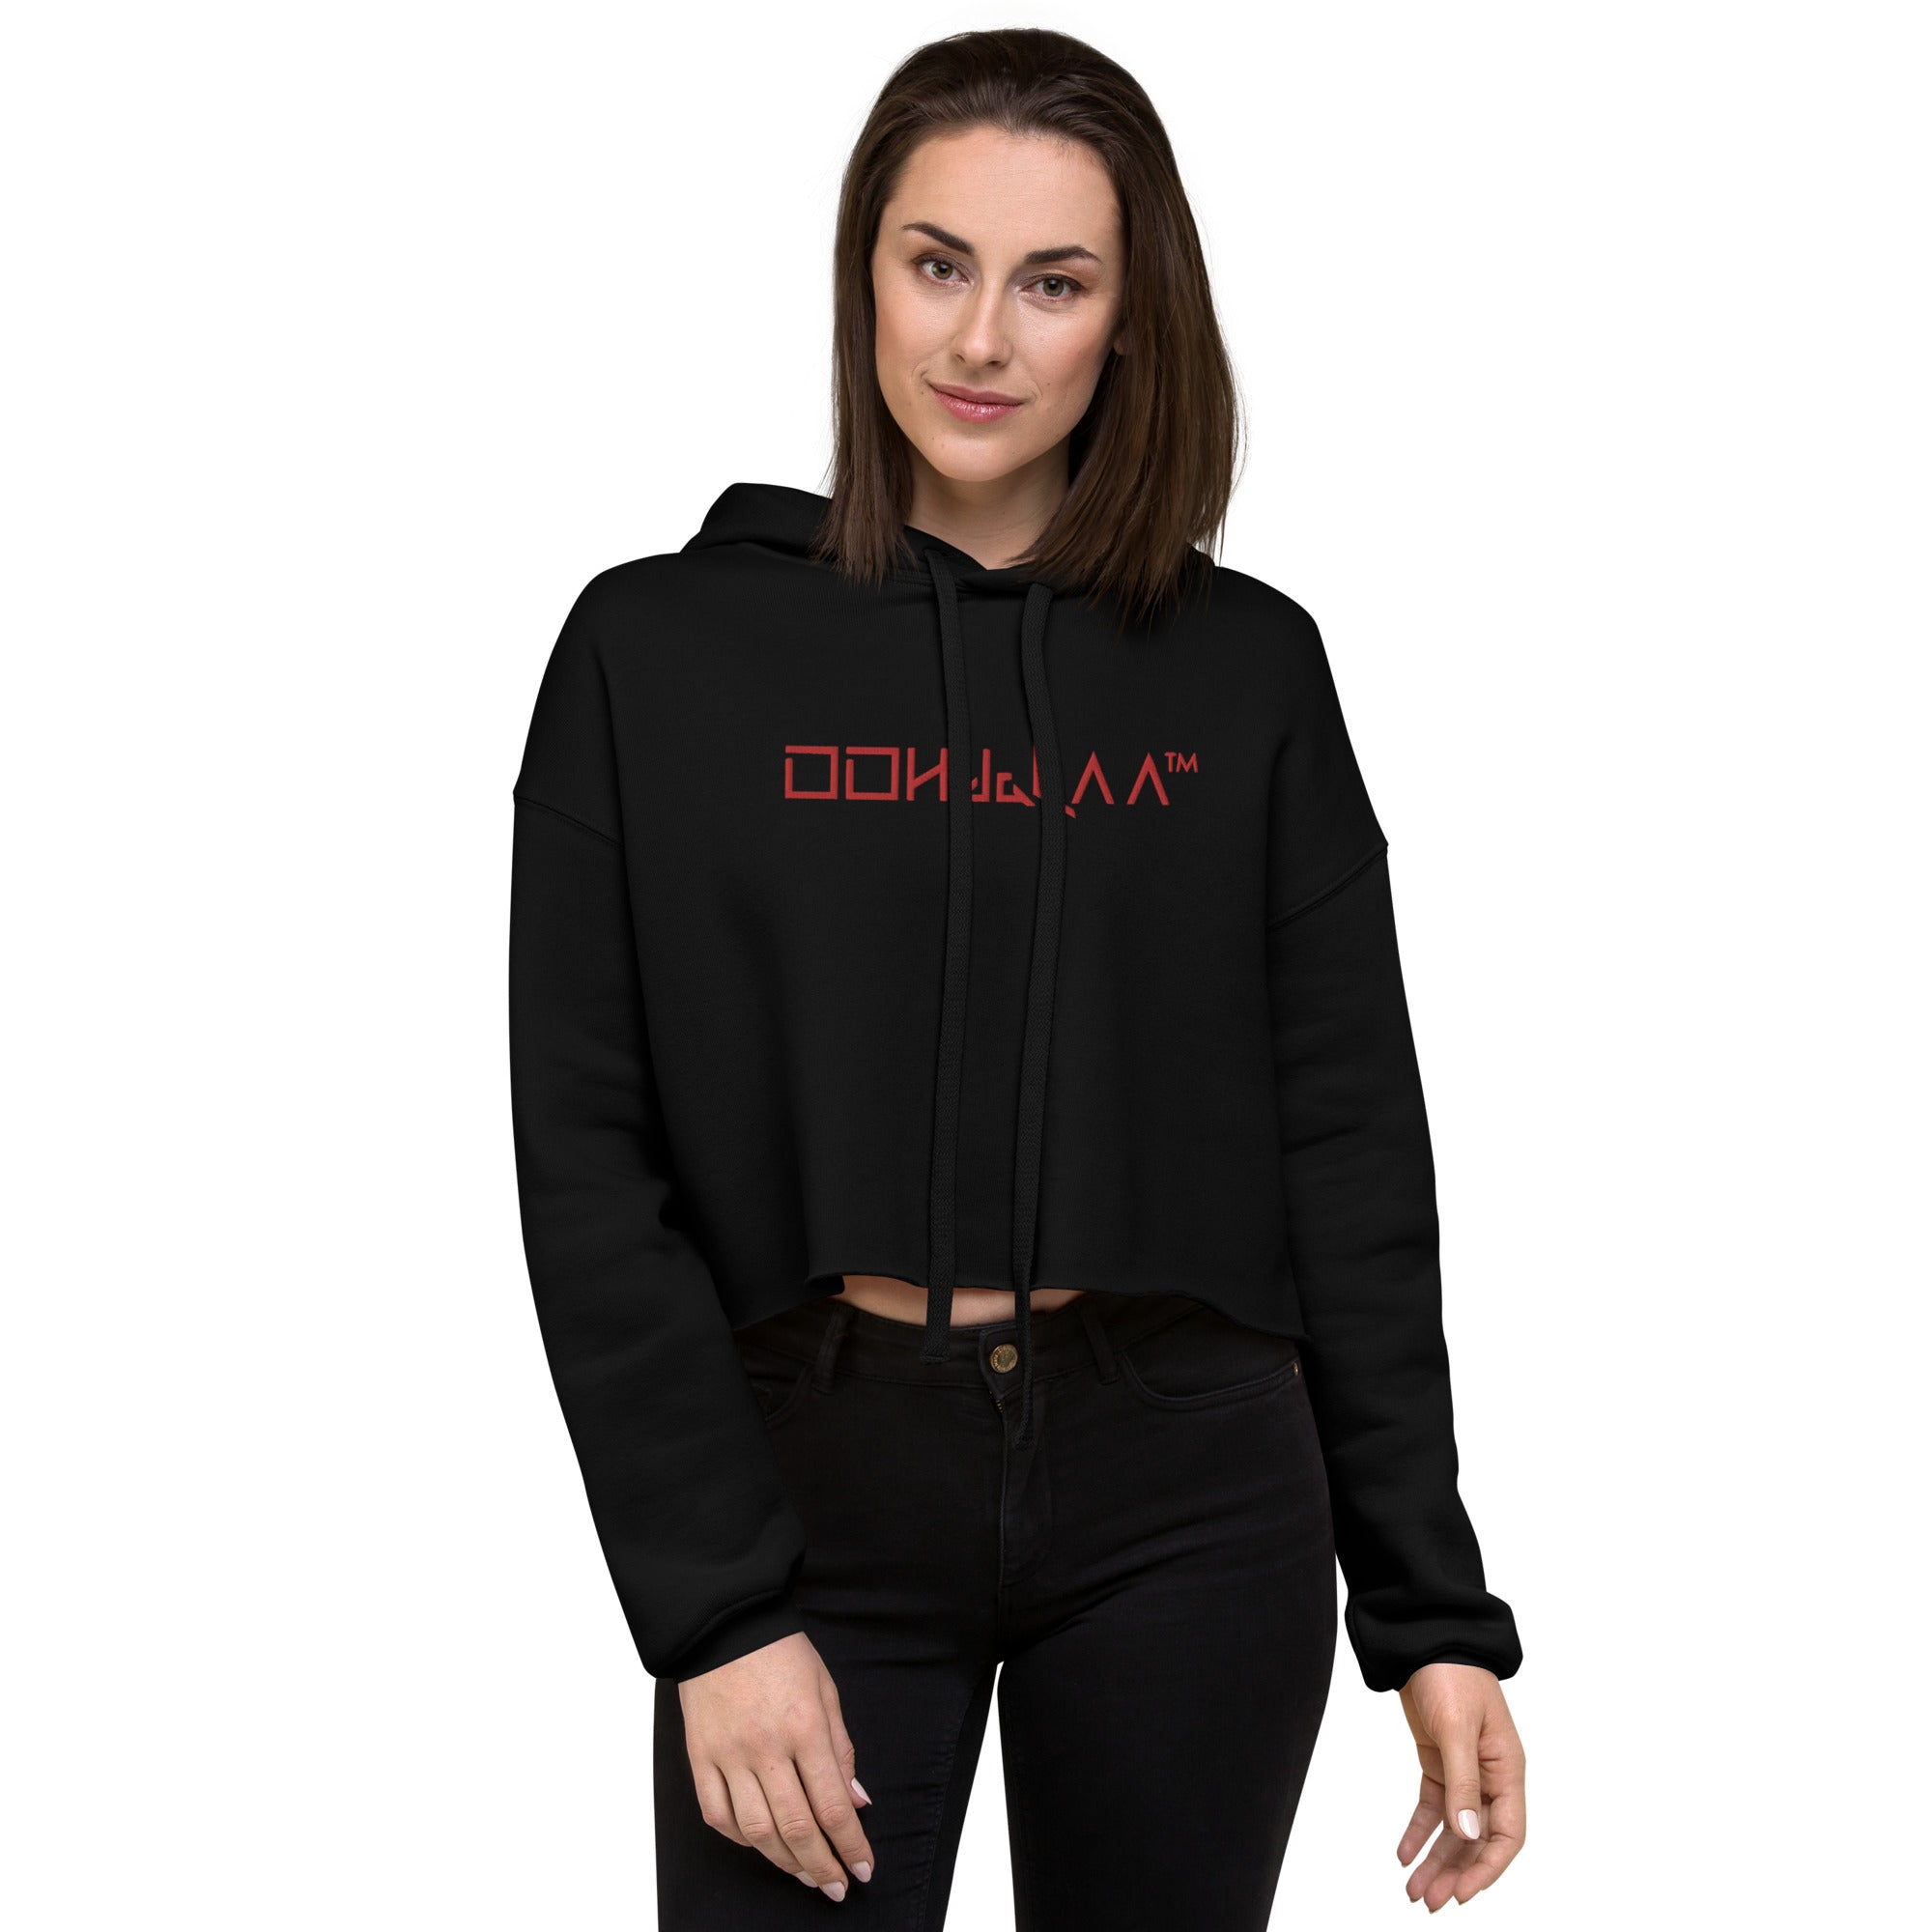 Stylish women's black cropped hoodie - OOHdaLAA Crop Top Hoodie, front view.